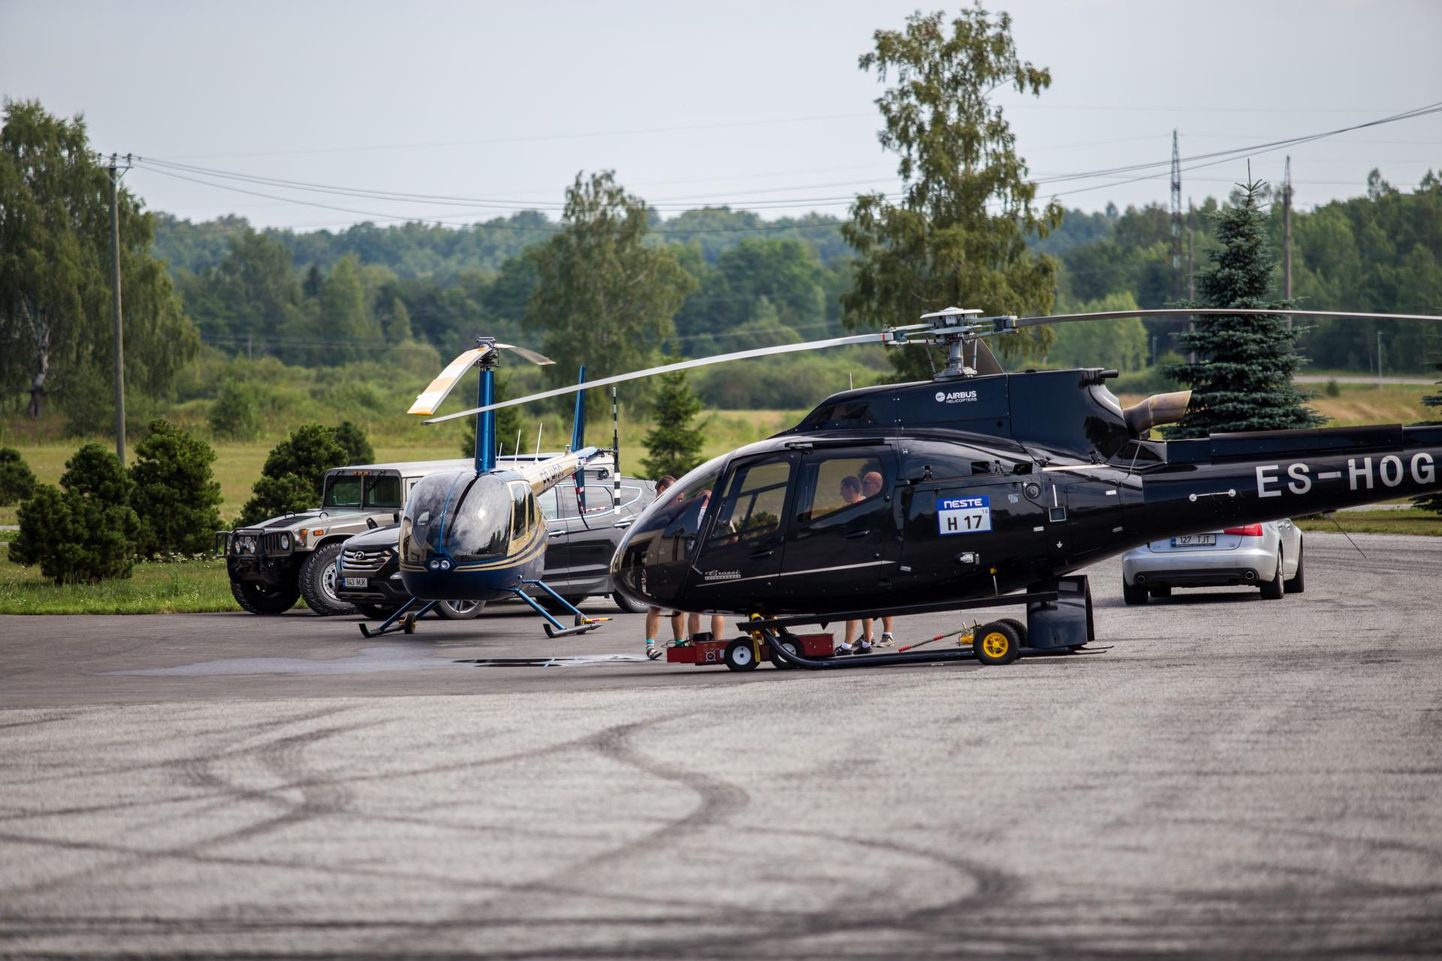 Средства передвижения Олега Гросса. Новенький Robinson виден слева, справа - Eurocopter.